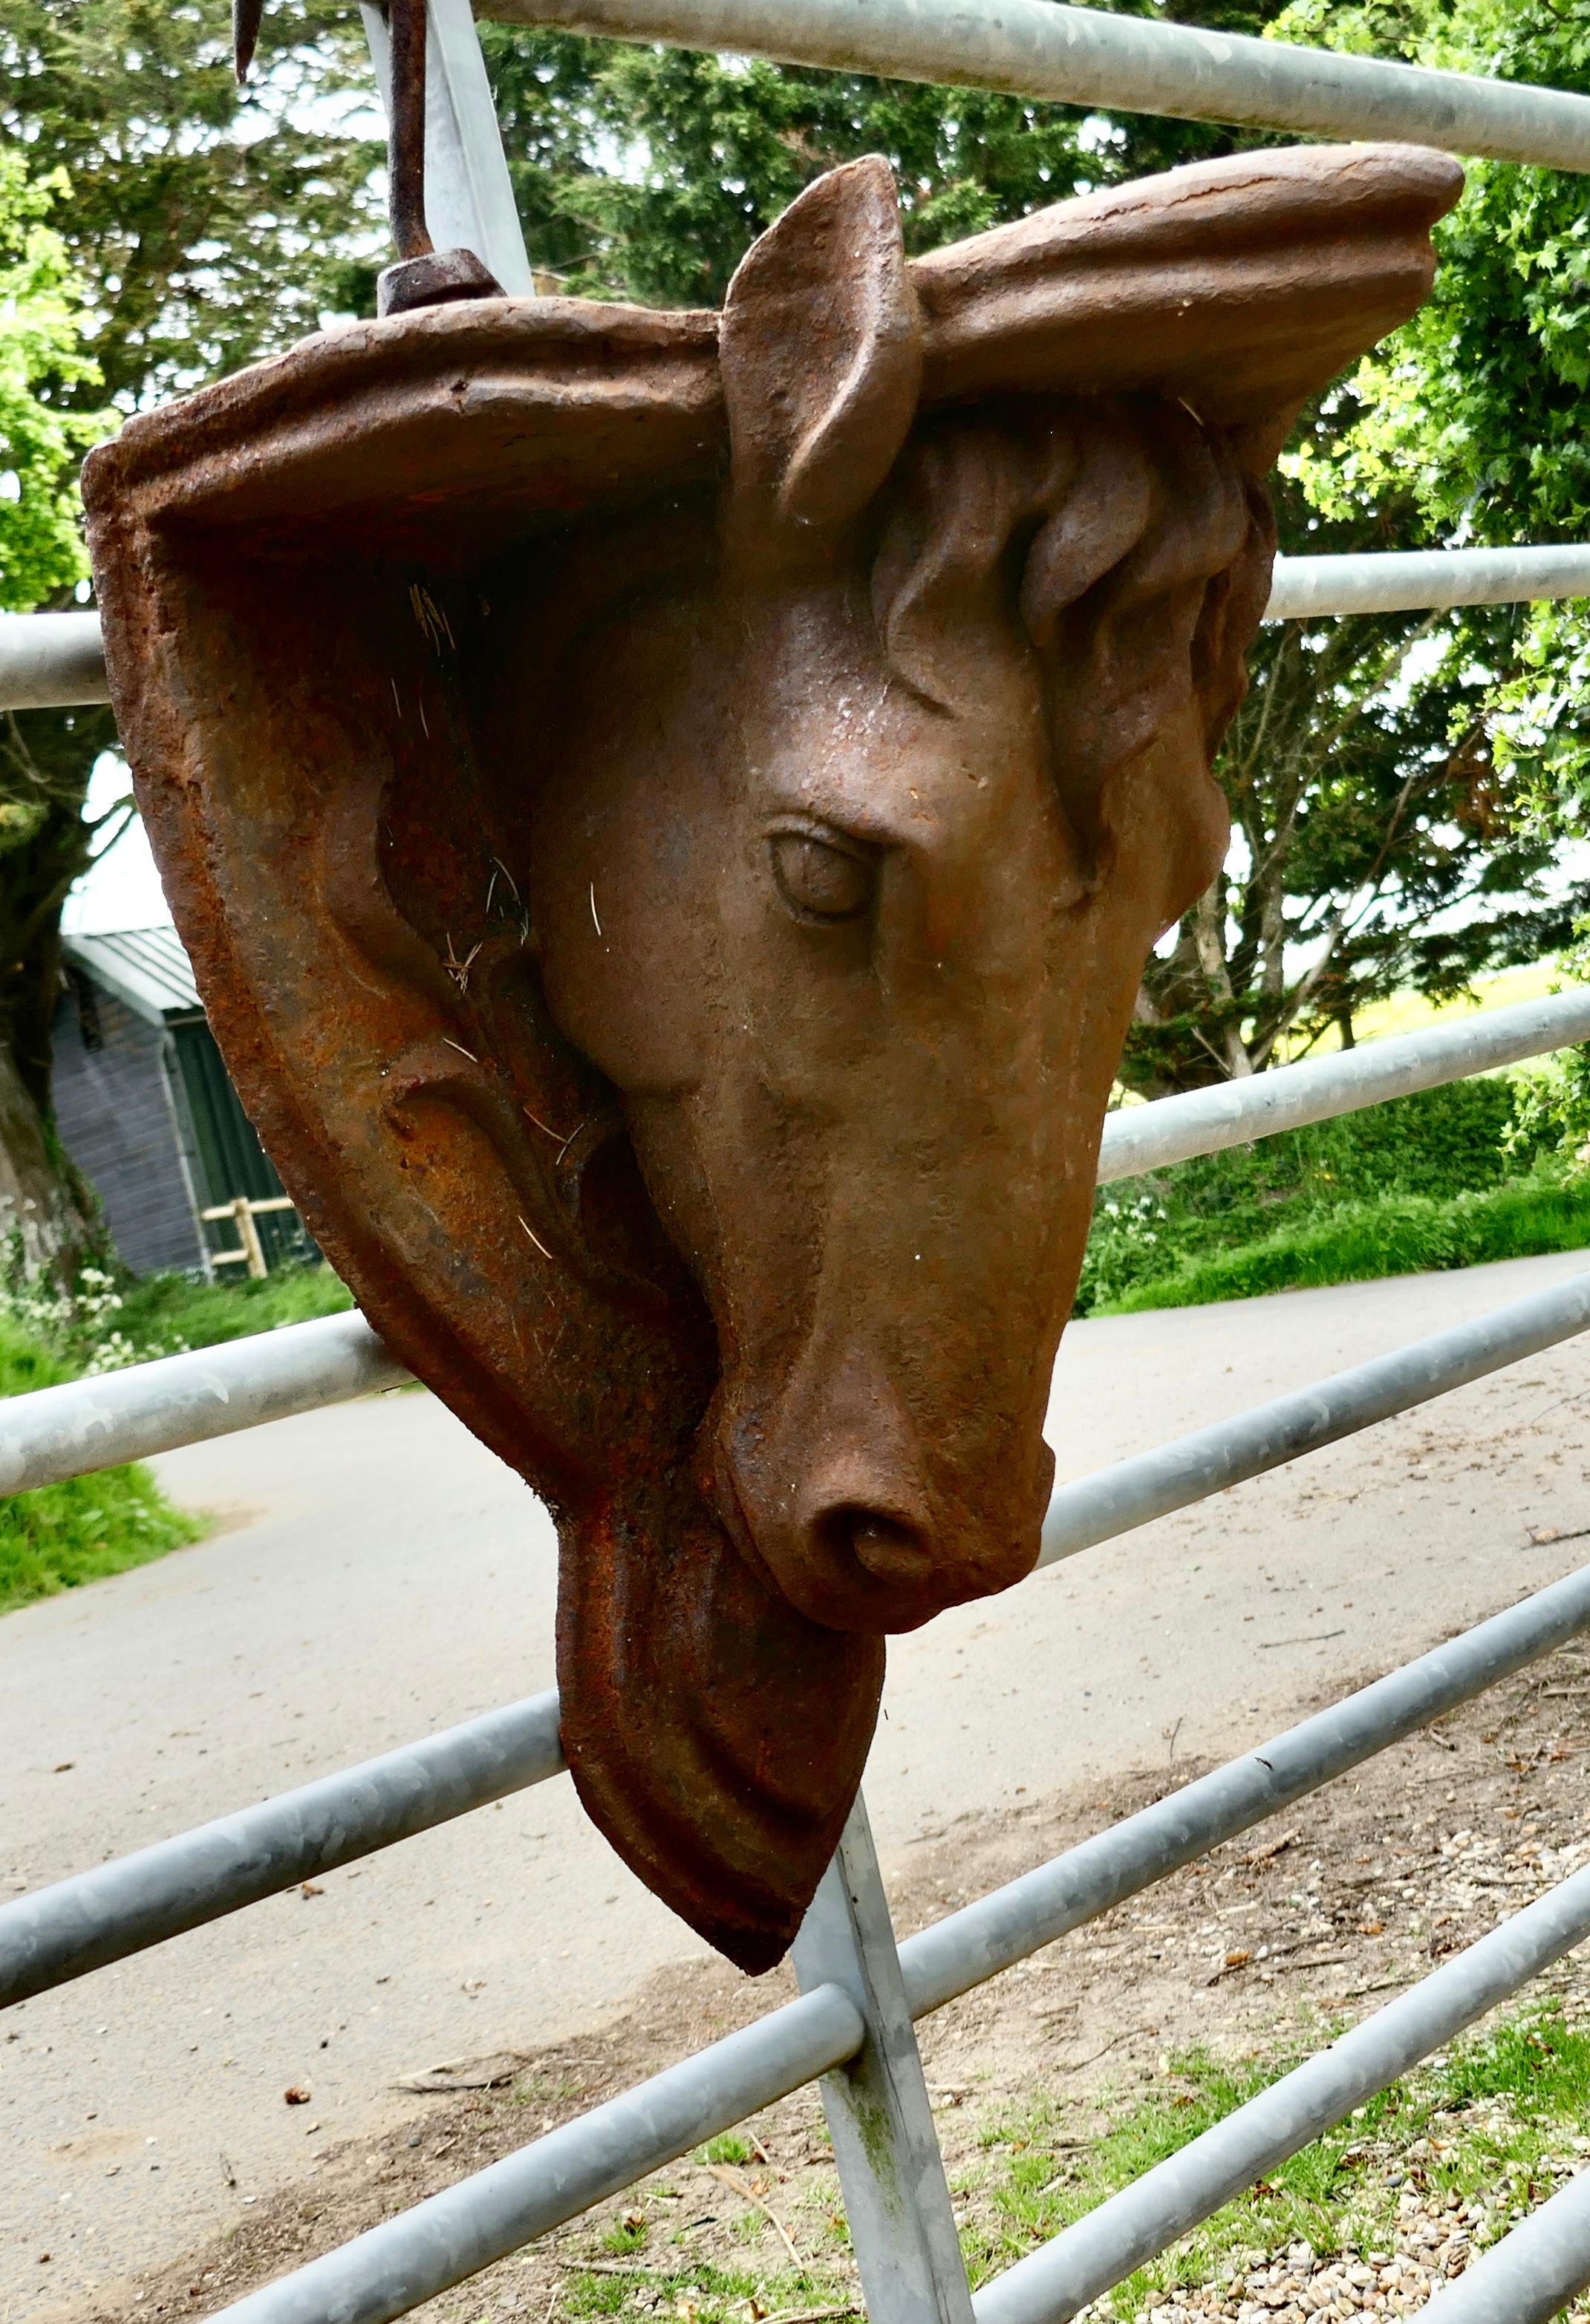 2 schwere gusseiserne Pferdekopf-Wandhalterungen

Die Statuen bestehen aus einem skulptierten Pferdekopf, der oben einen Bügel trägt
Es gibt 2 dieser großartigen Stücke, sie müssen an die Wand gehängt werden, sie sind in gutem, leicht rostig